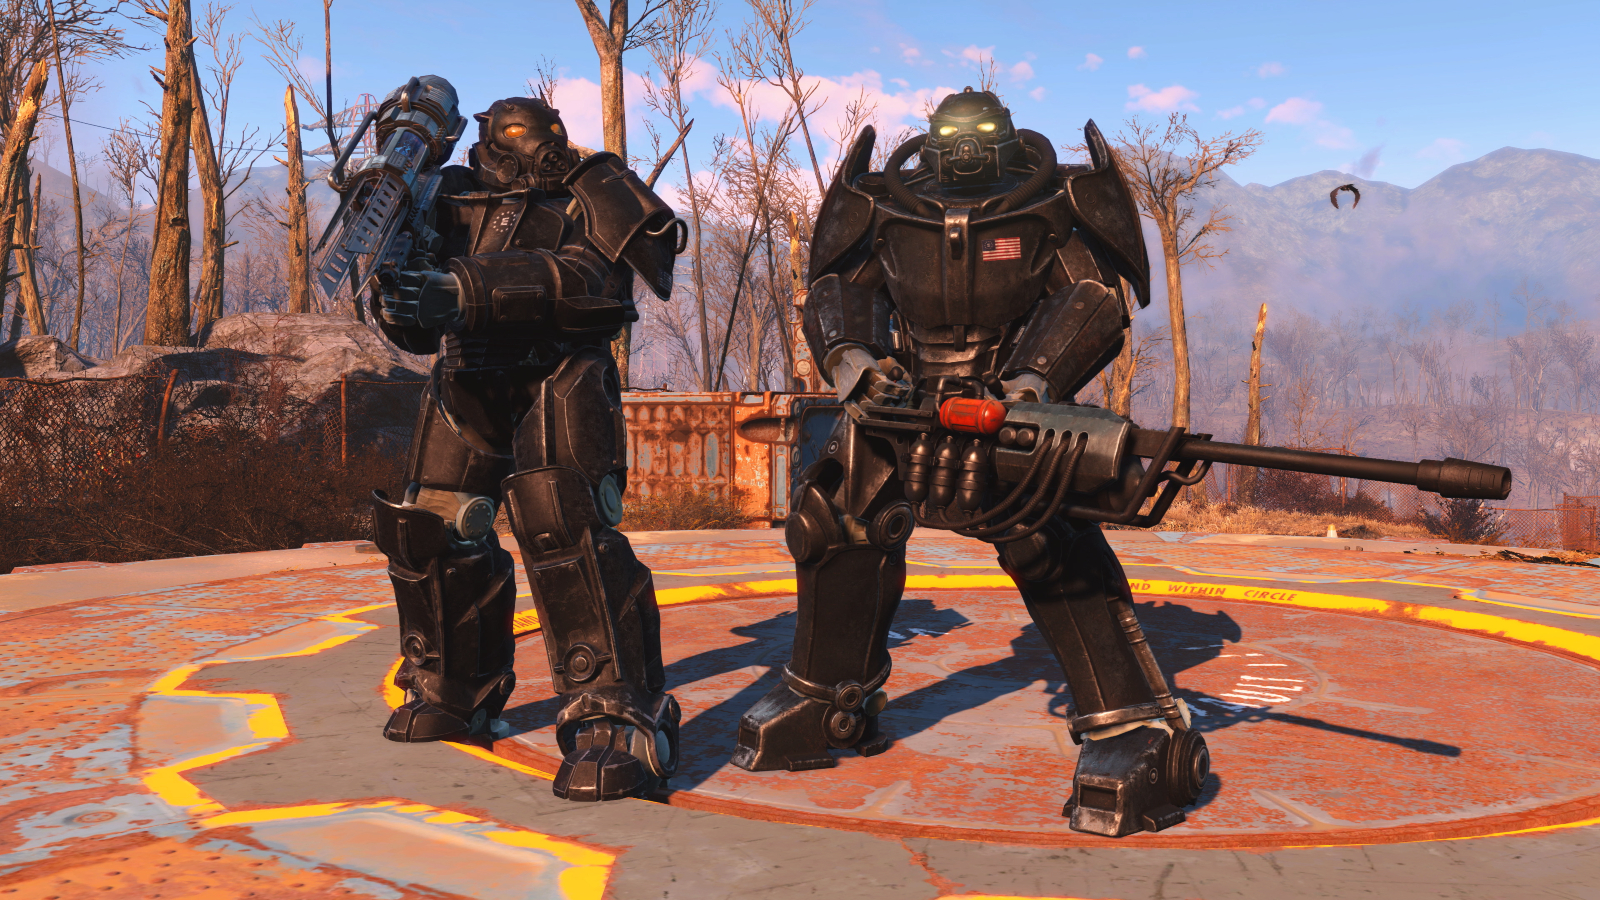 Обновление Fallout 4 следующего поколения: дата выхода, новый контент, технические улучшения и многое другое